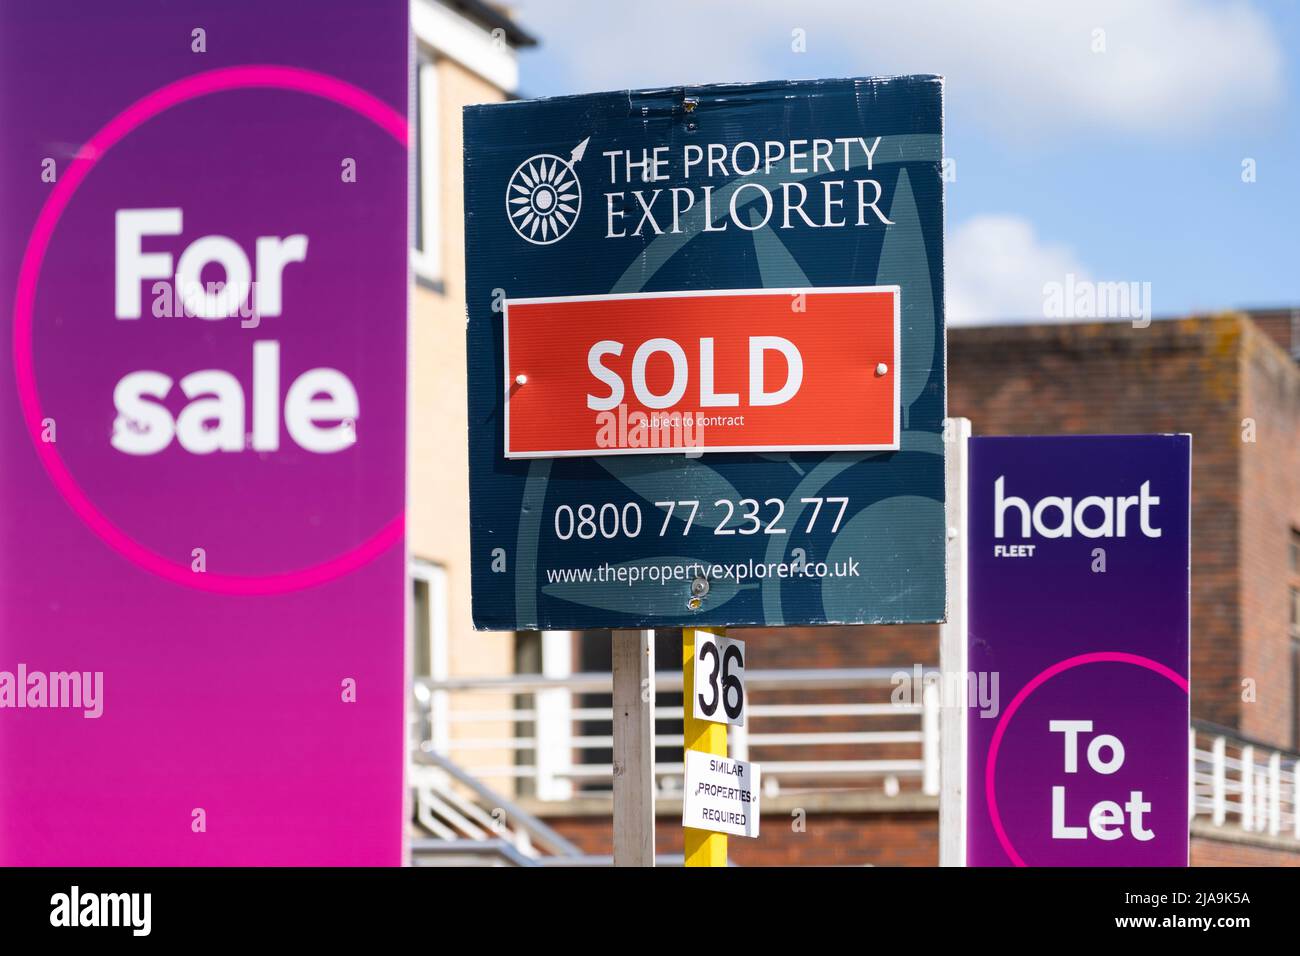 UK Immobilienmakler Zeichen zeigen Immobilien zum Verkauf und zu vermieten. Konzept - Absturz des Immobilienmarktes, durchschnittlicher britischer Immobilienpreis, Immobilienmarkt, steigende Preise Stockfoto